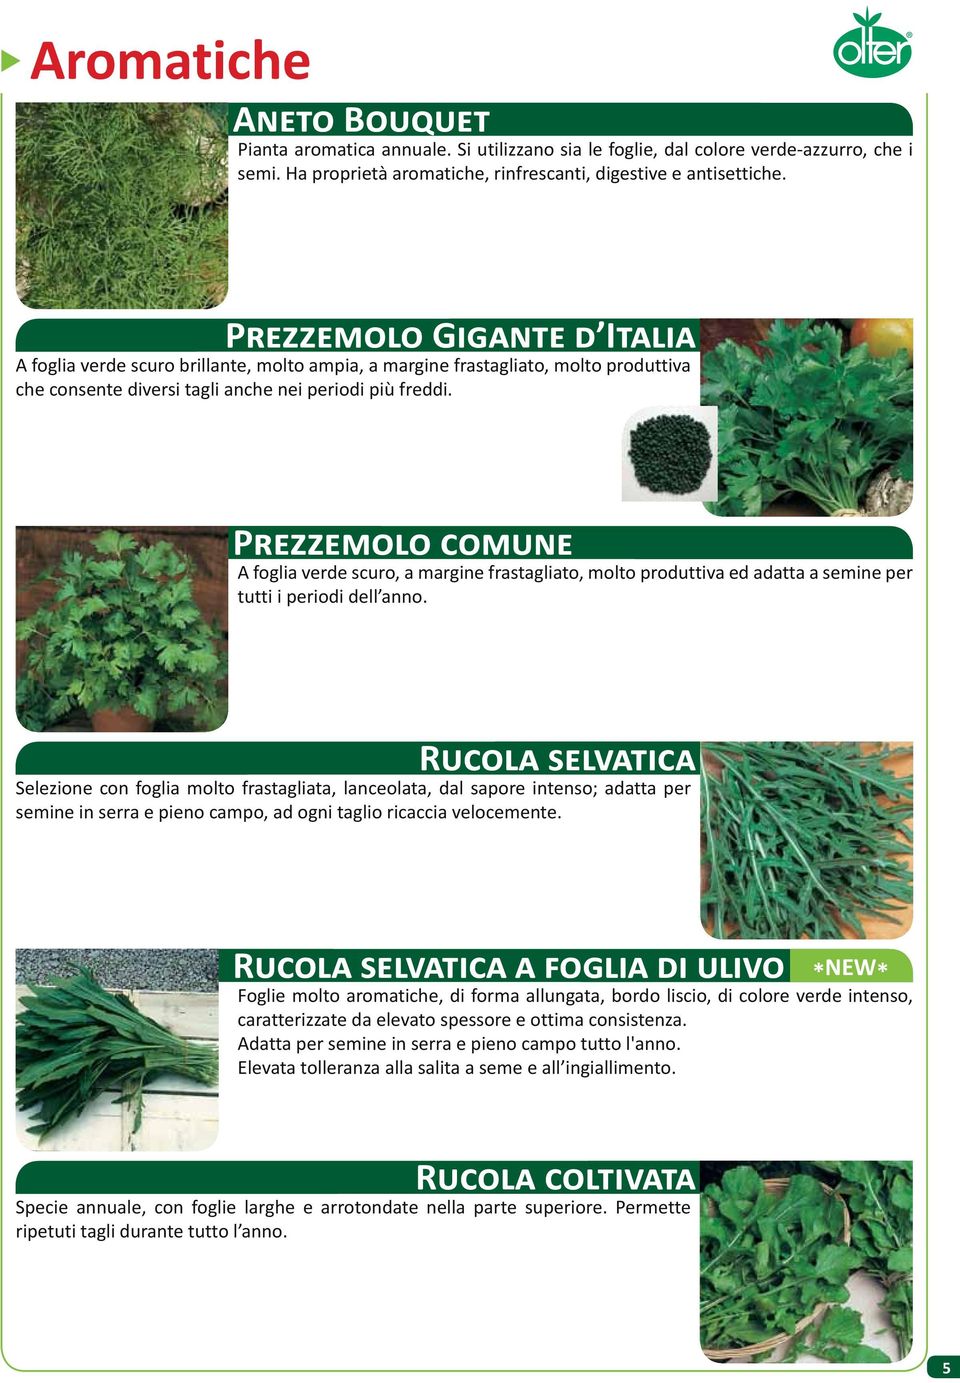 P A foglia verde scuro, a margine frastagliato, molto produttiva ed adatta a semine per tutti i periodi dell anno.